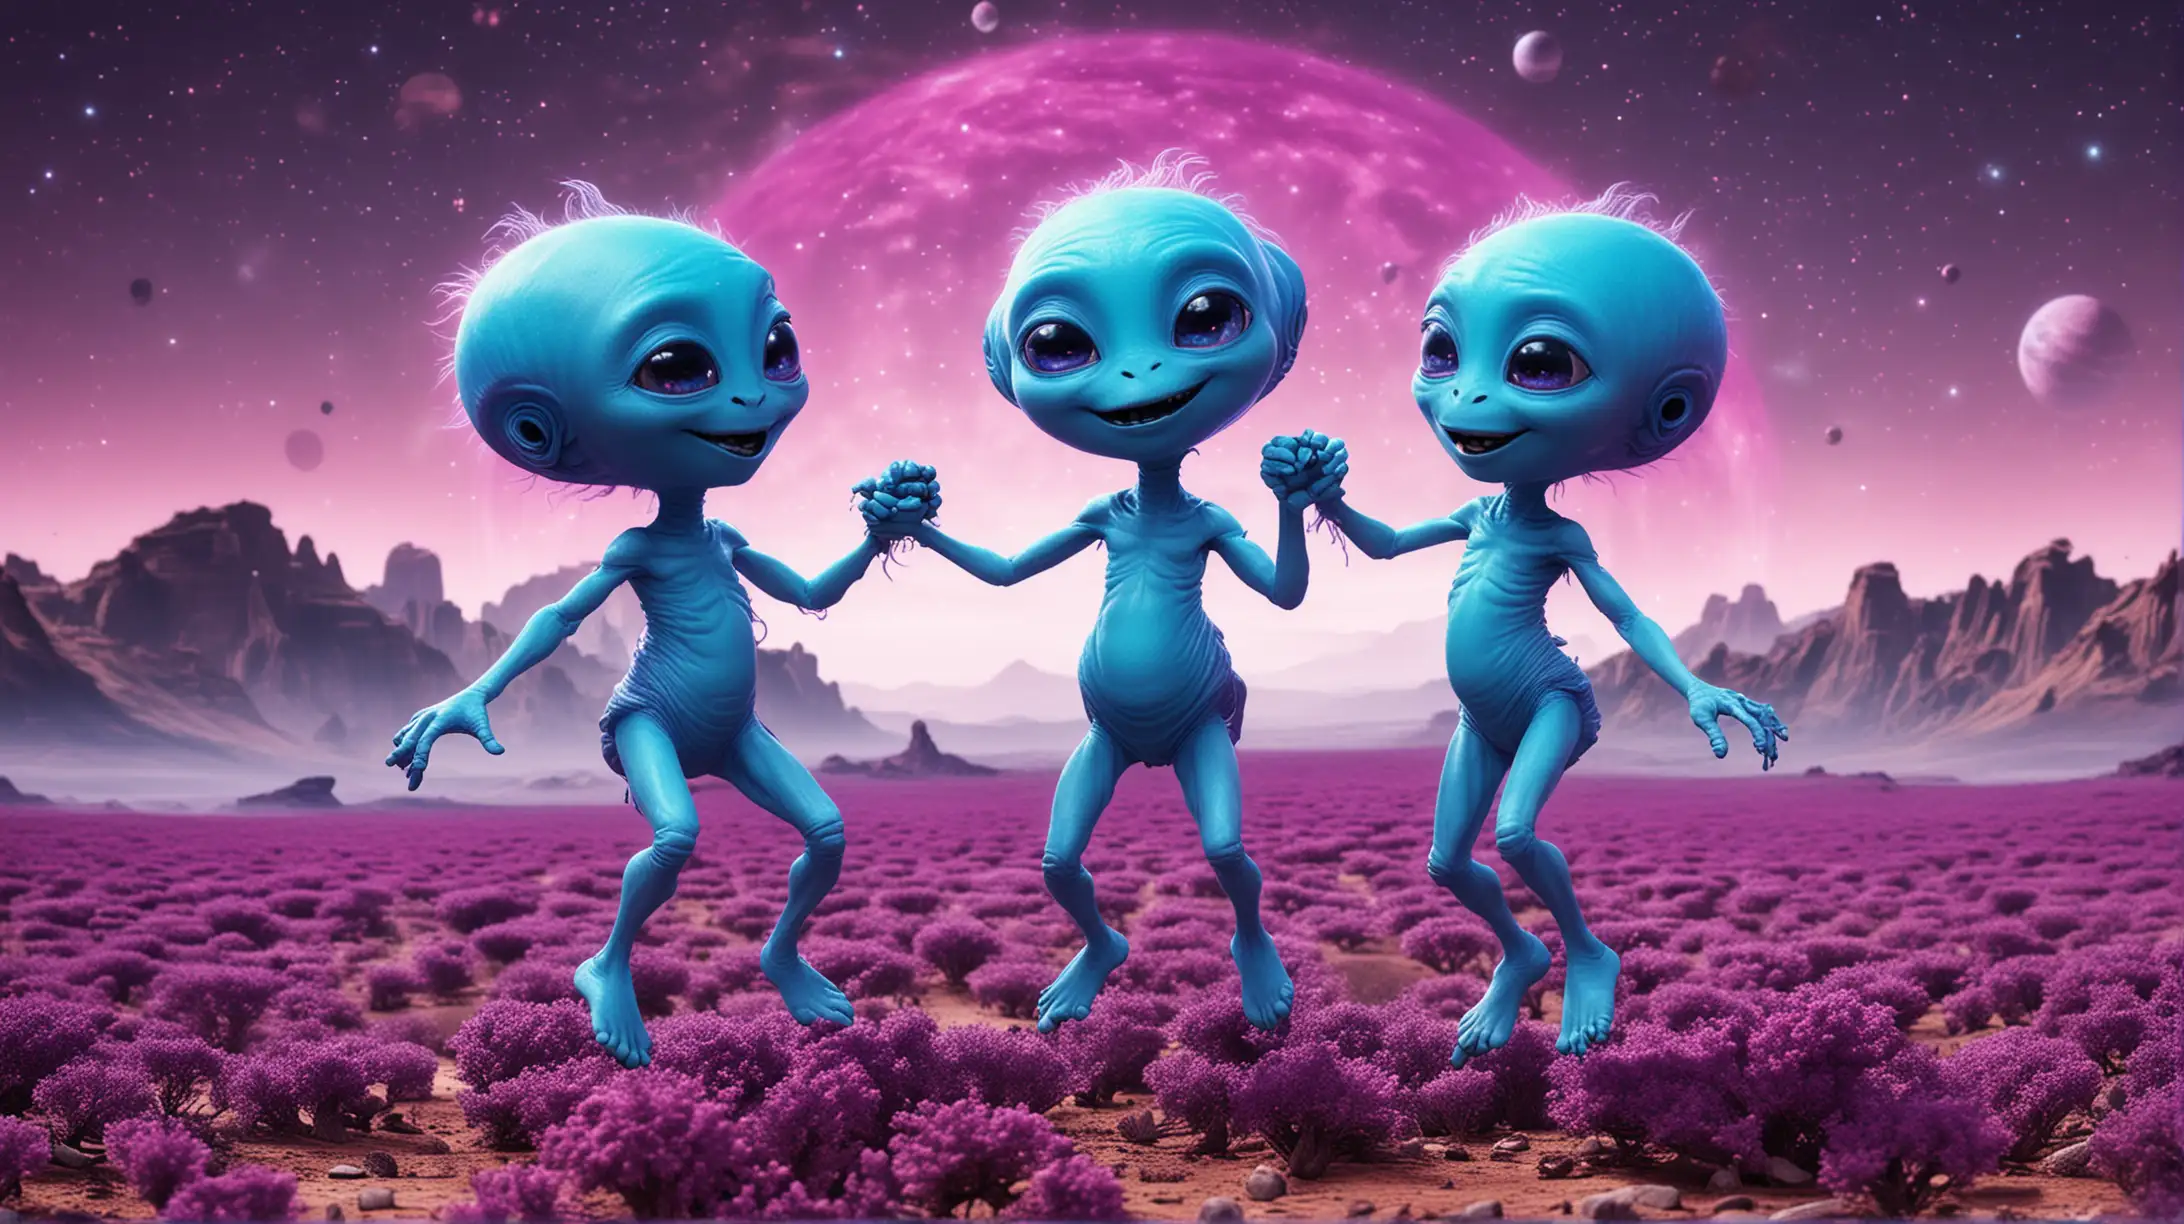 Joyful Blue Aliens Dancing on a Purple Planet